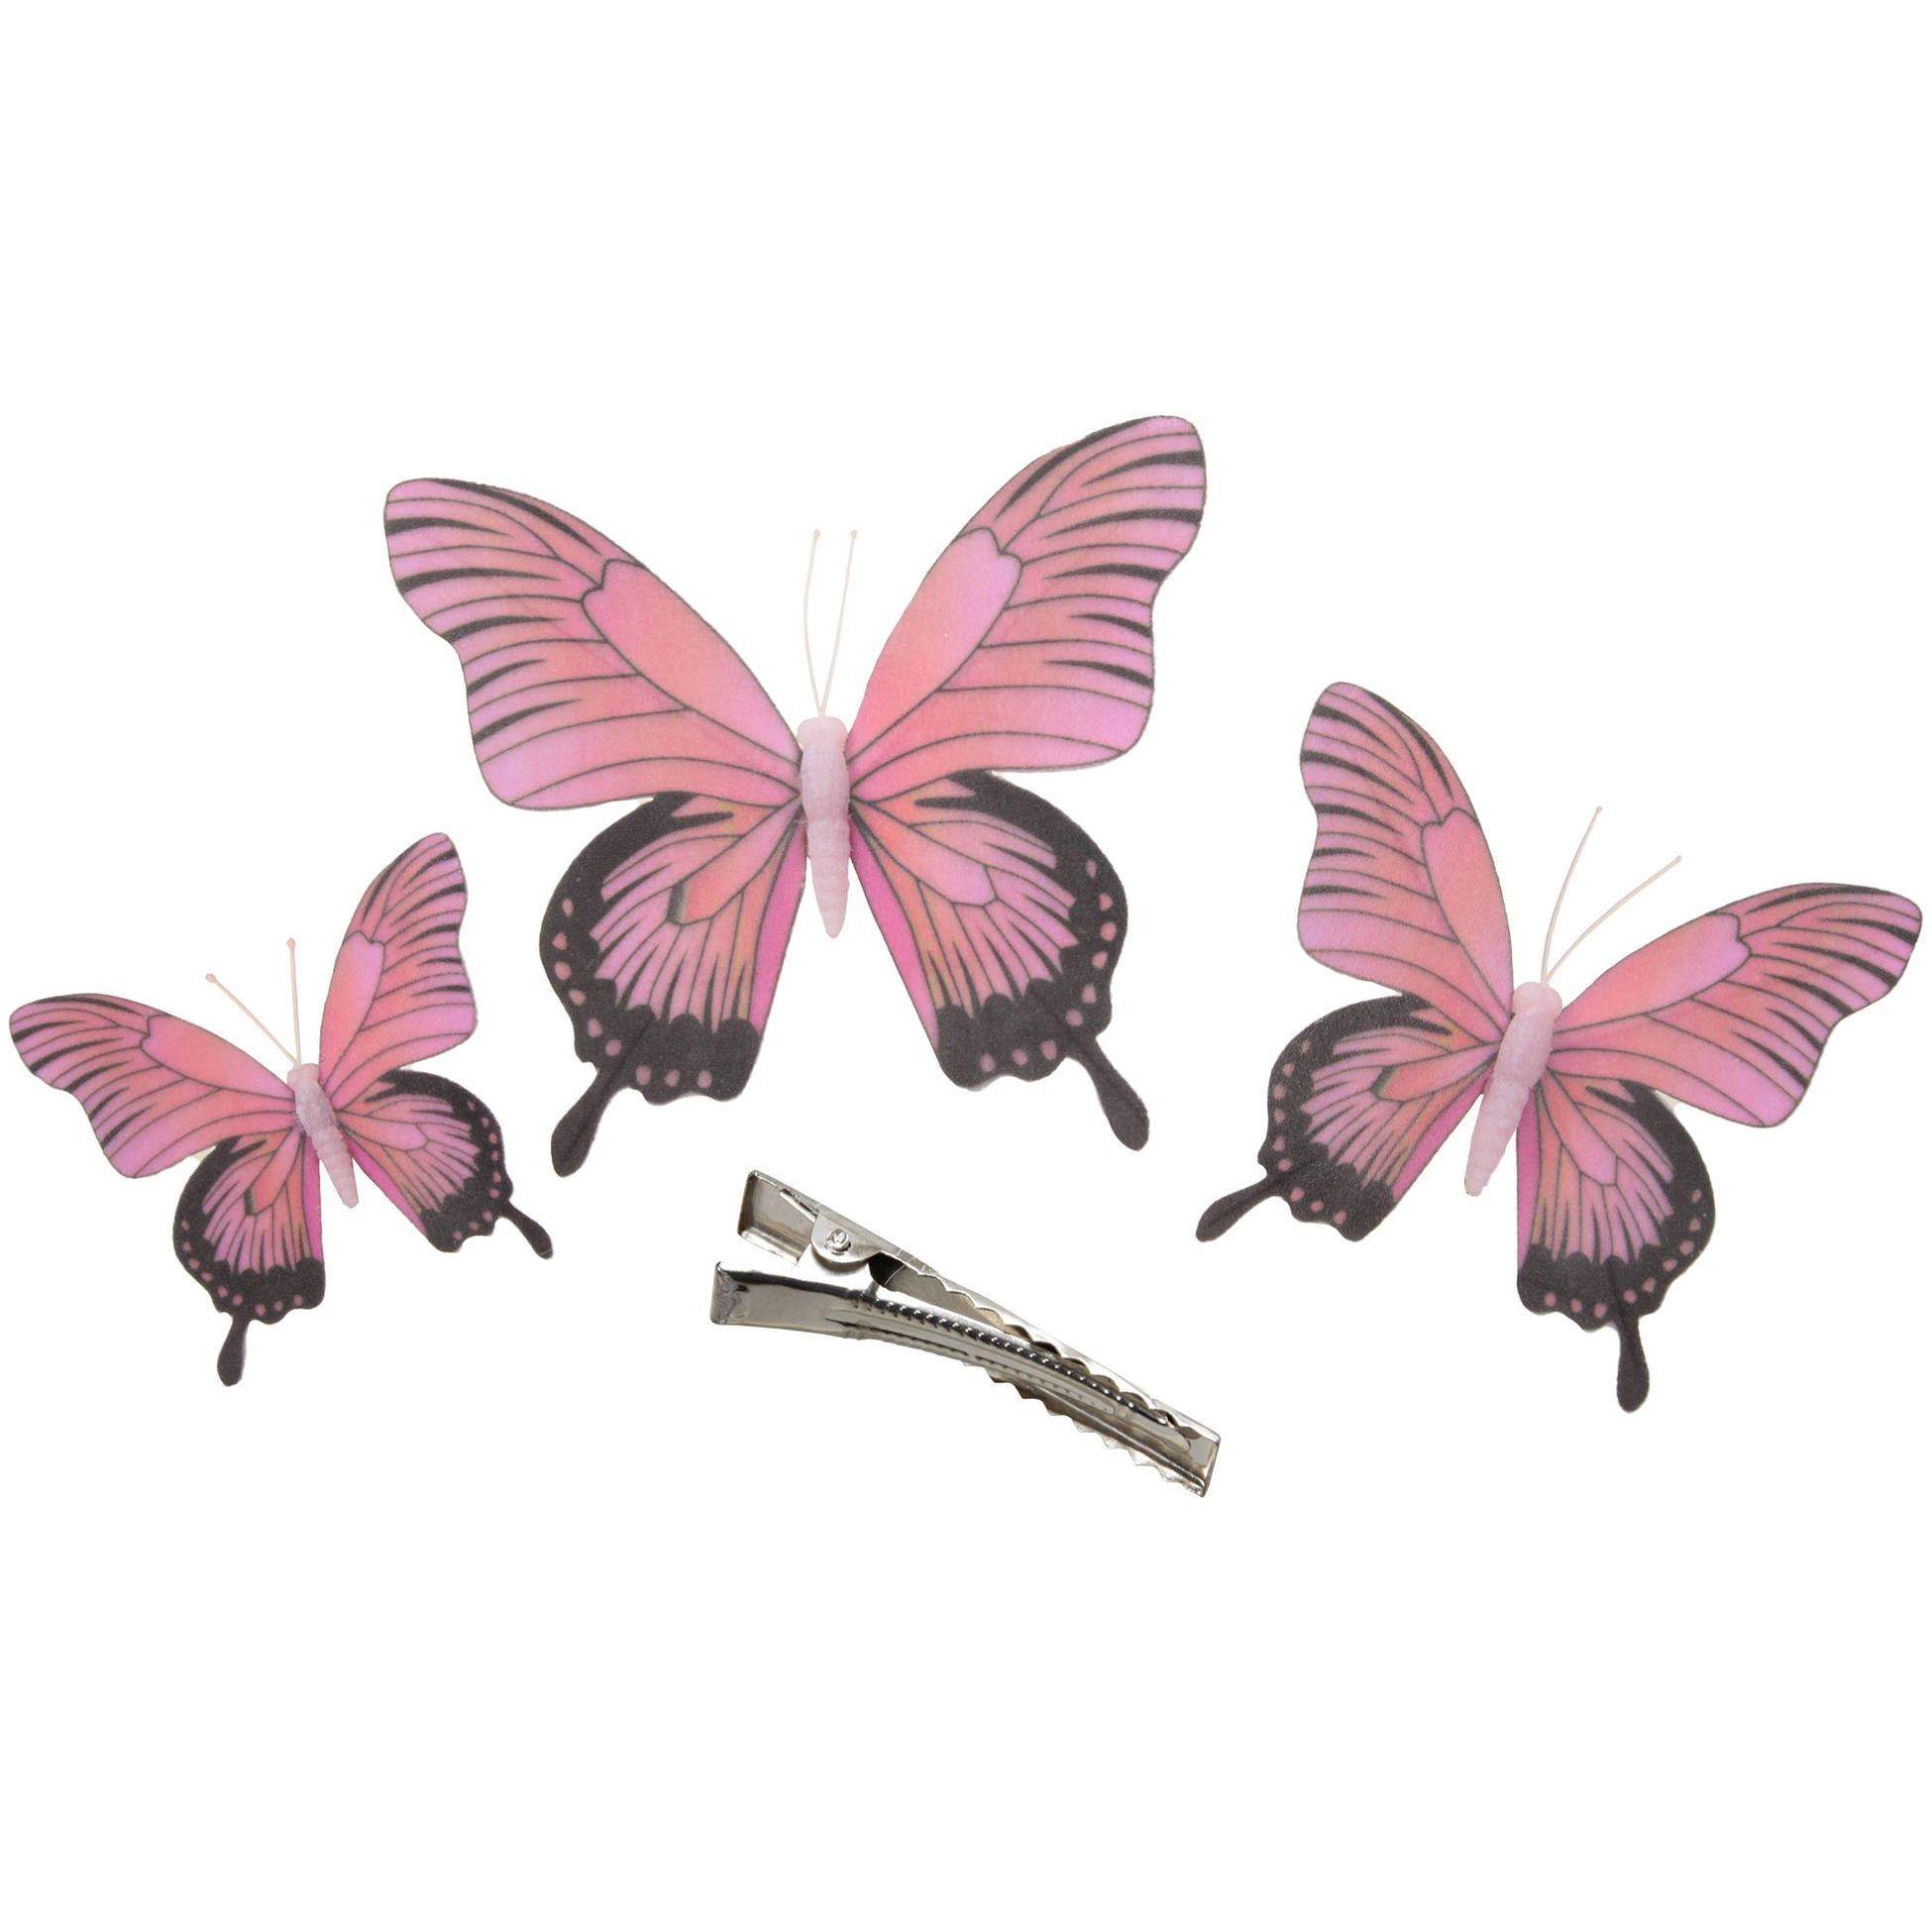 3x stuks decoratie vlinders op clip roze 3 formaten 12-16-20 cm